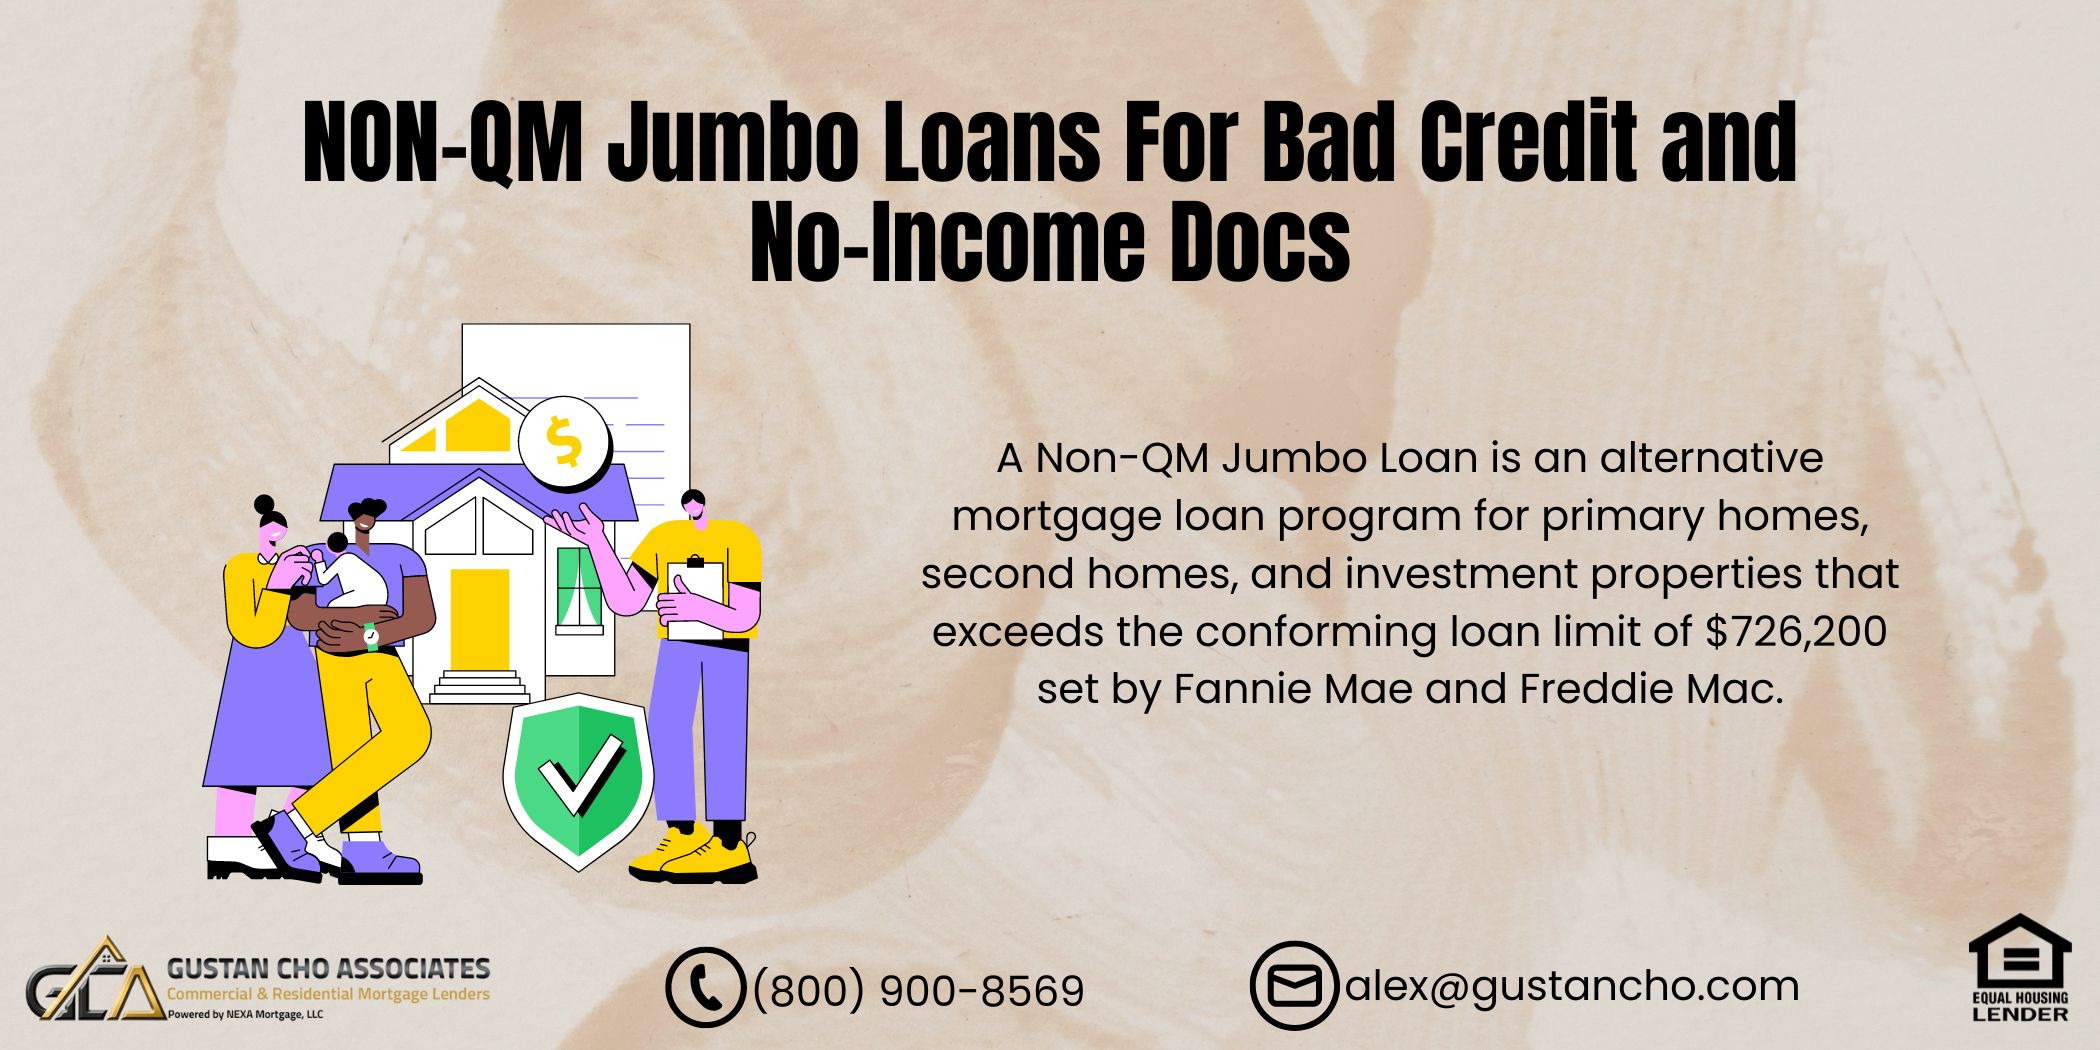 NON-QM Jumbo Loans